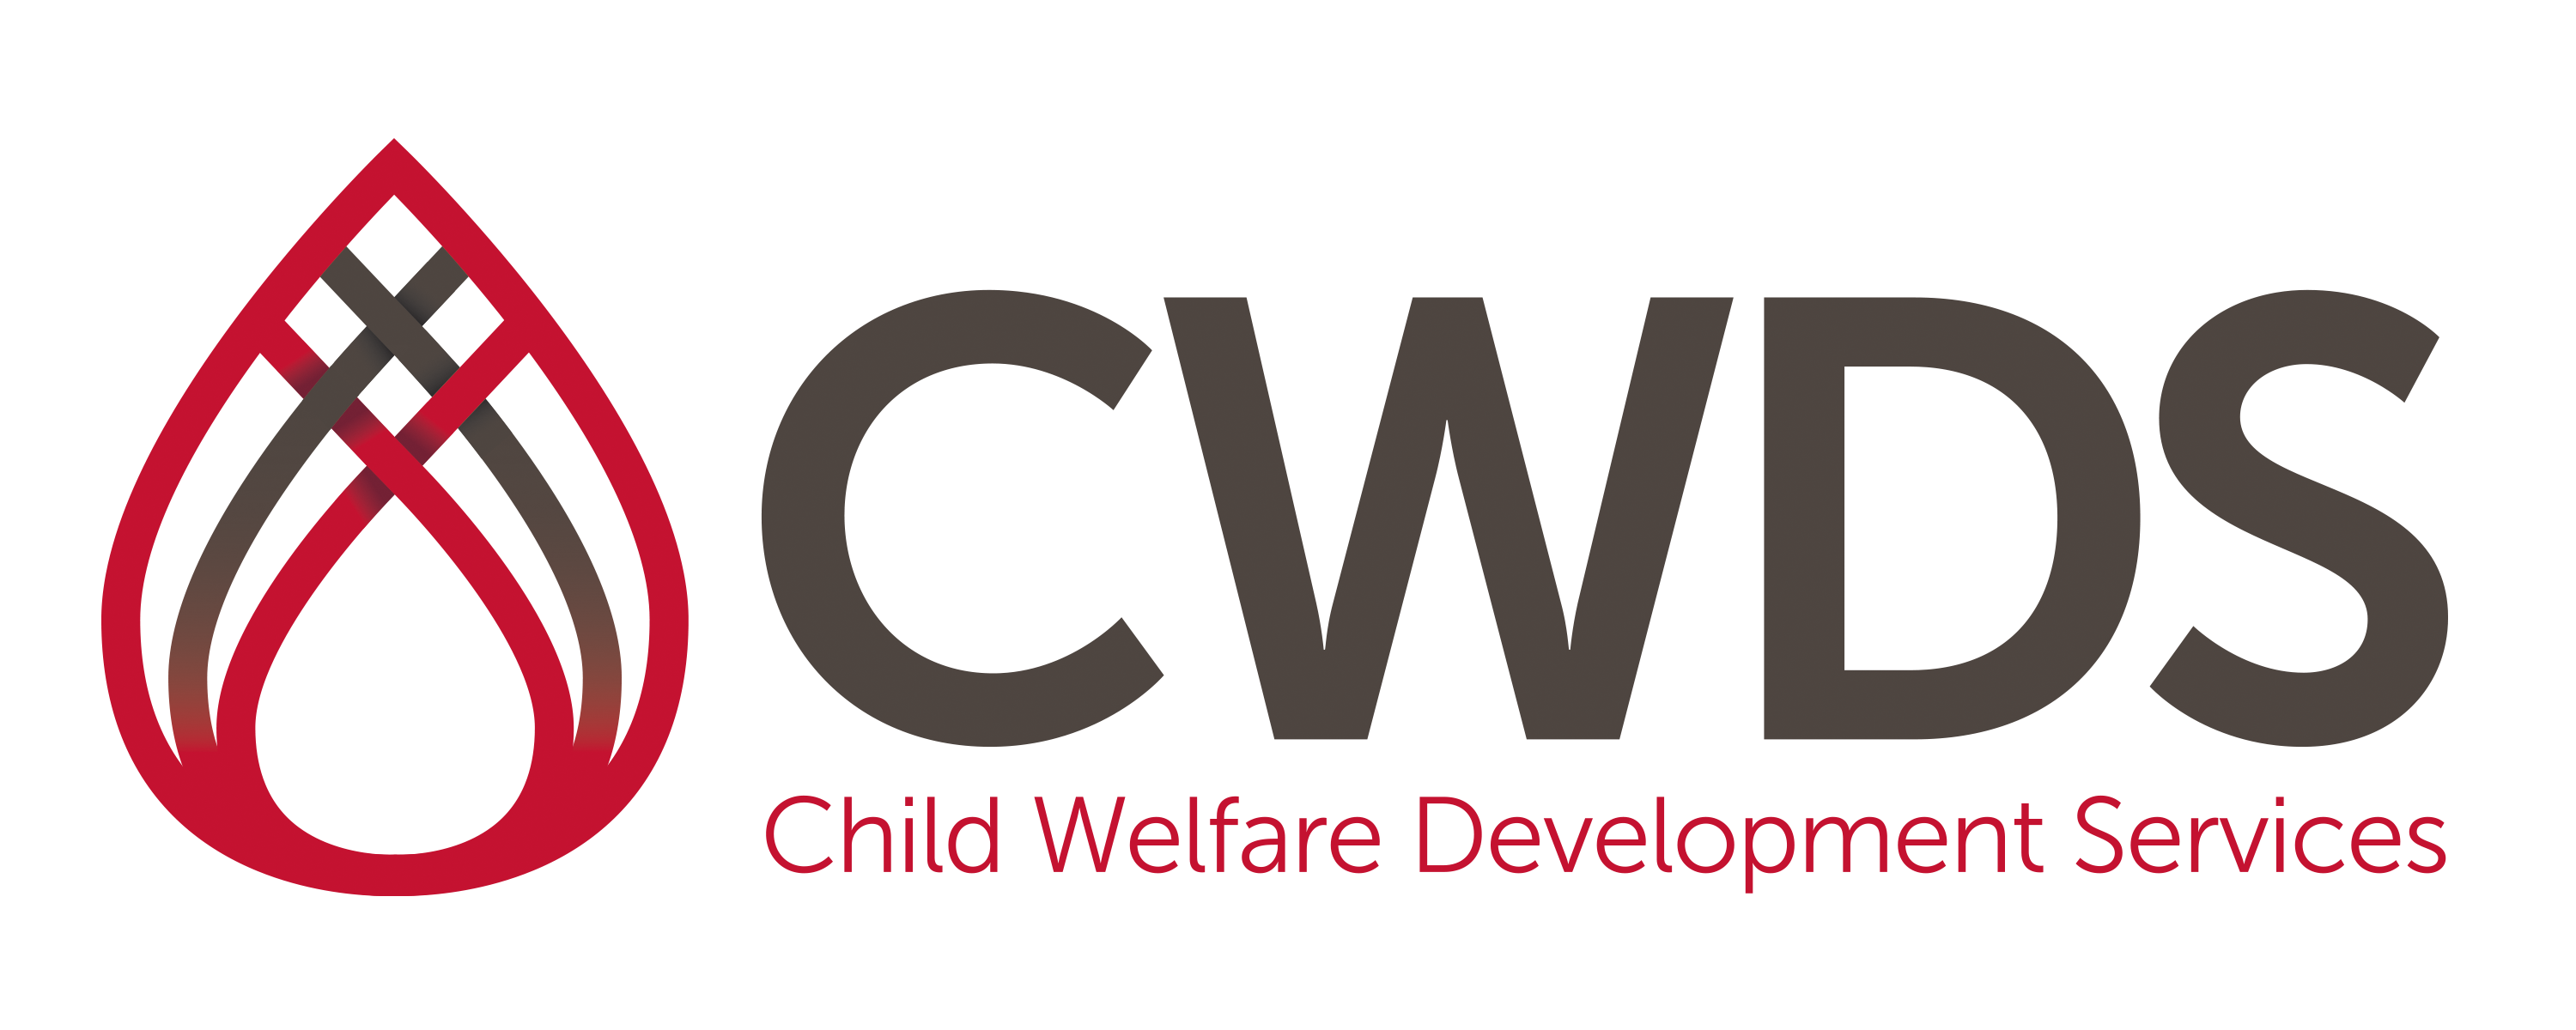 CWDS - Child Welfare Development Services Logo